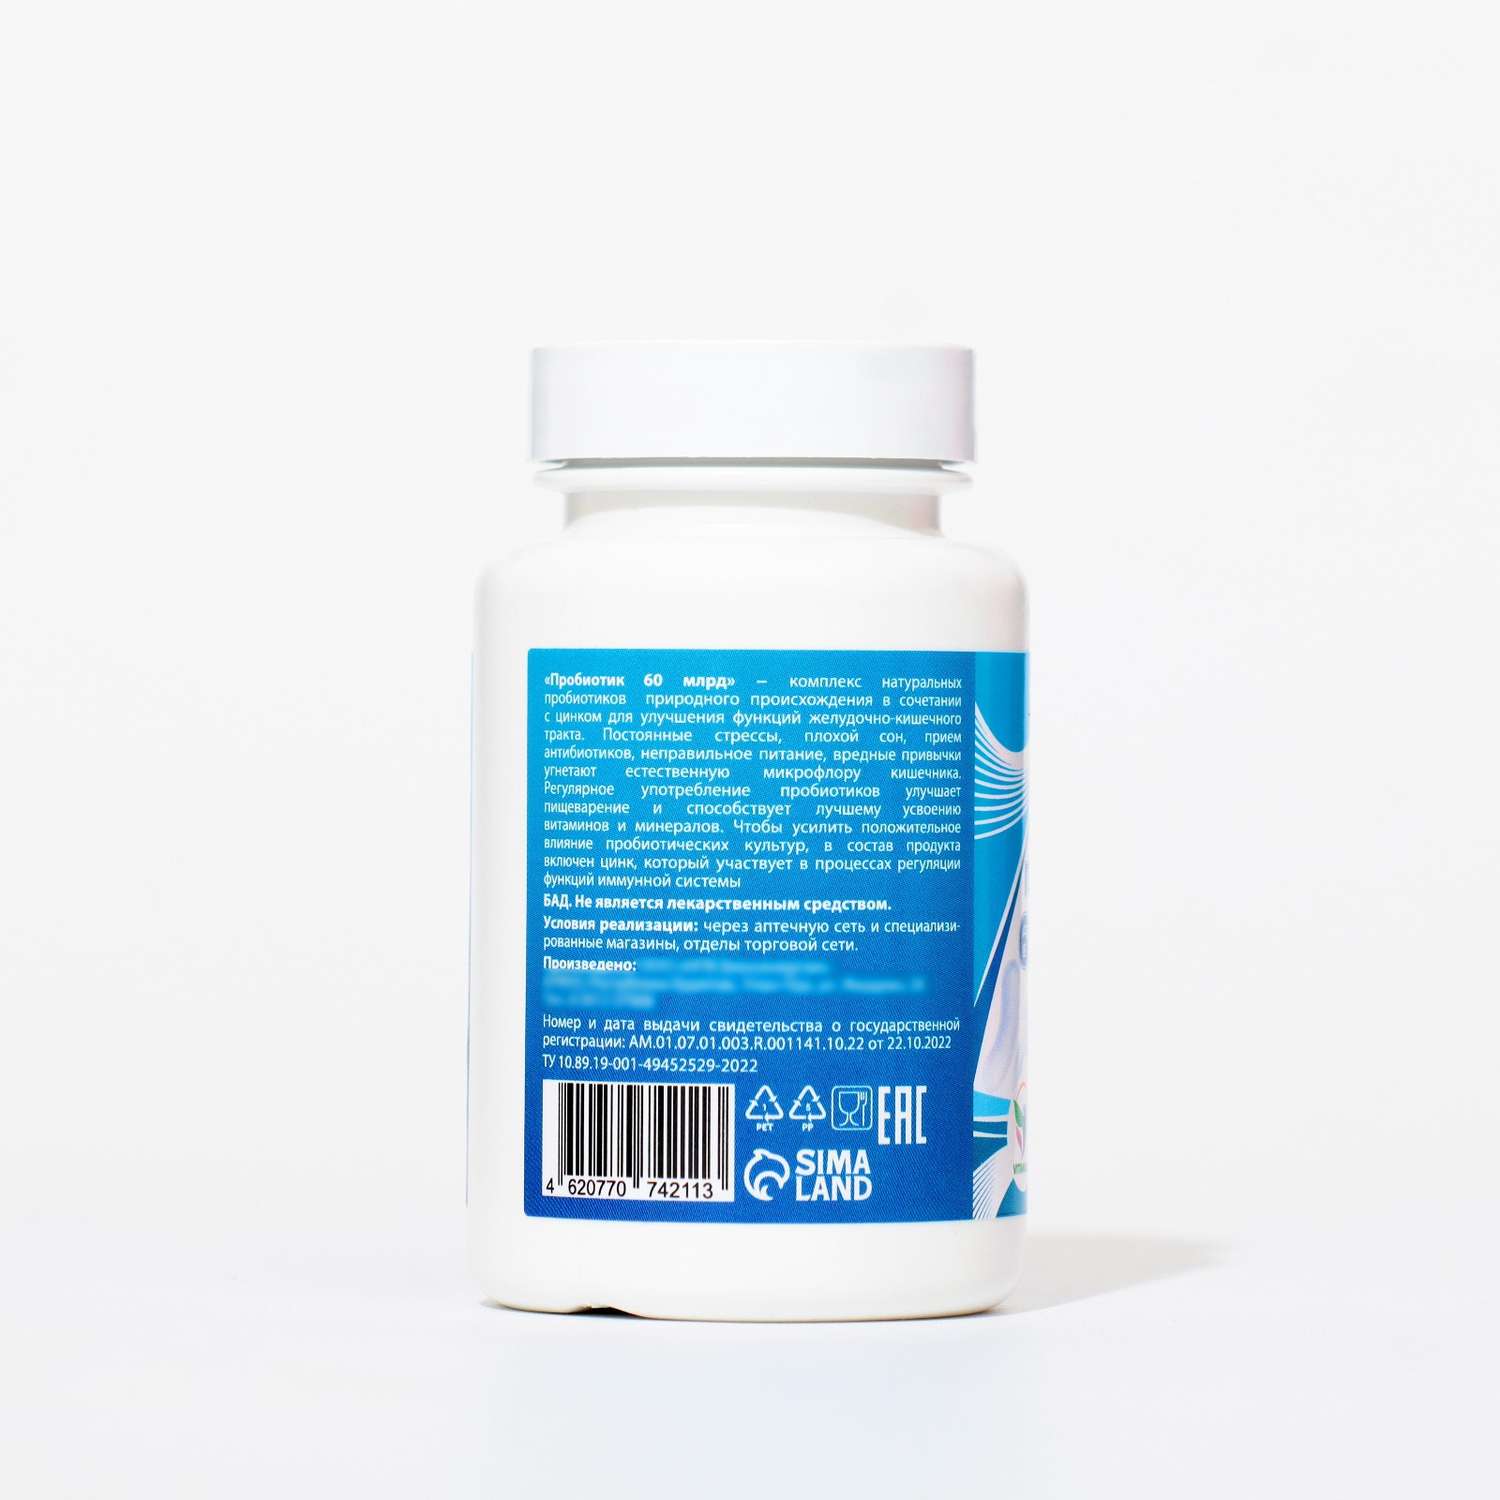 Пробиотик Vitamuno 60 миллиардов 60 таблеток - фото 2